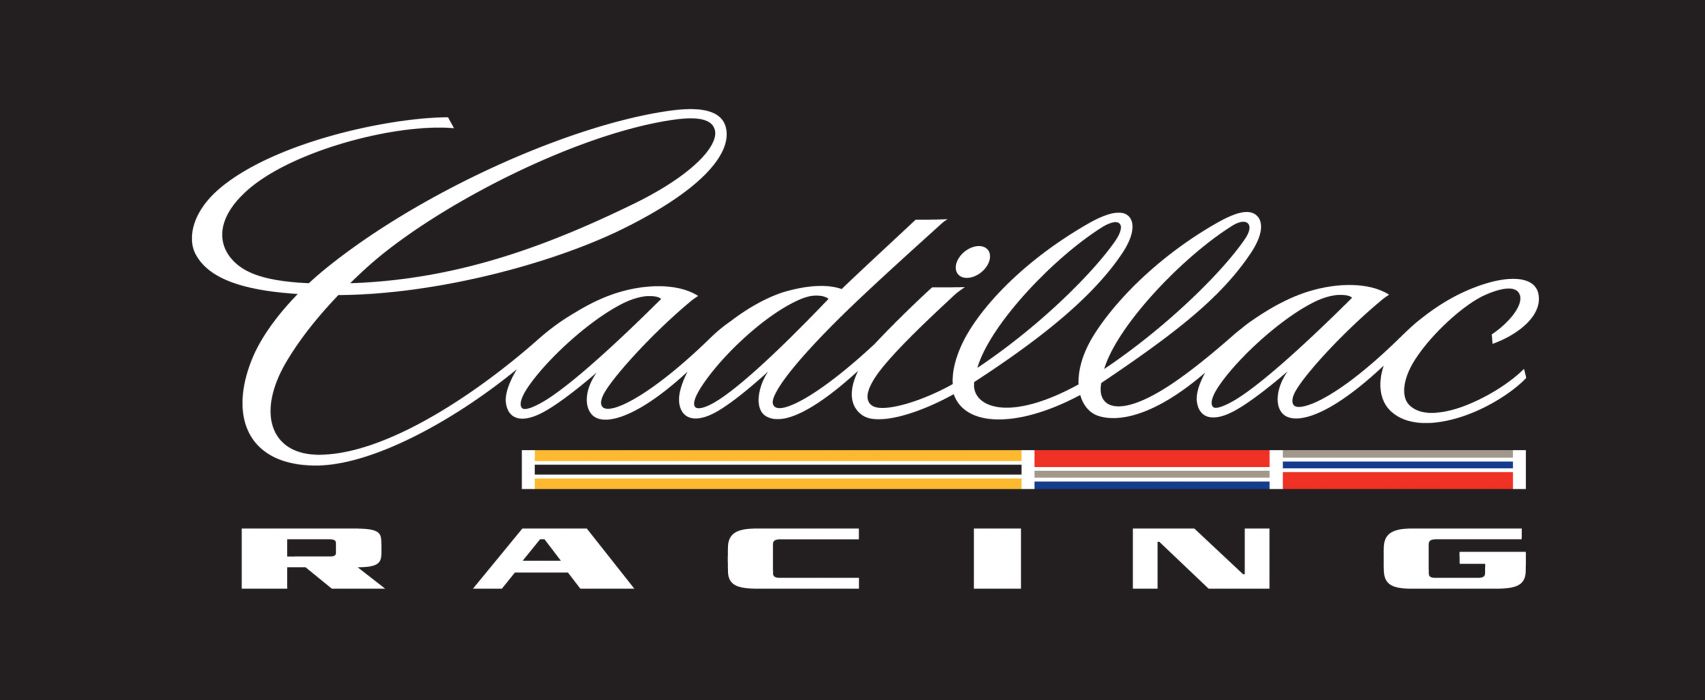 Cadillac Racing Logo - Racing logo race cadillac h wallpaperx1232